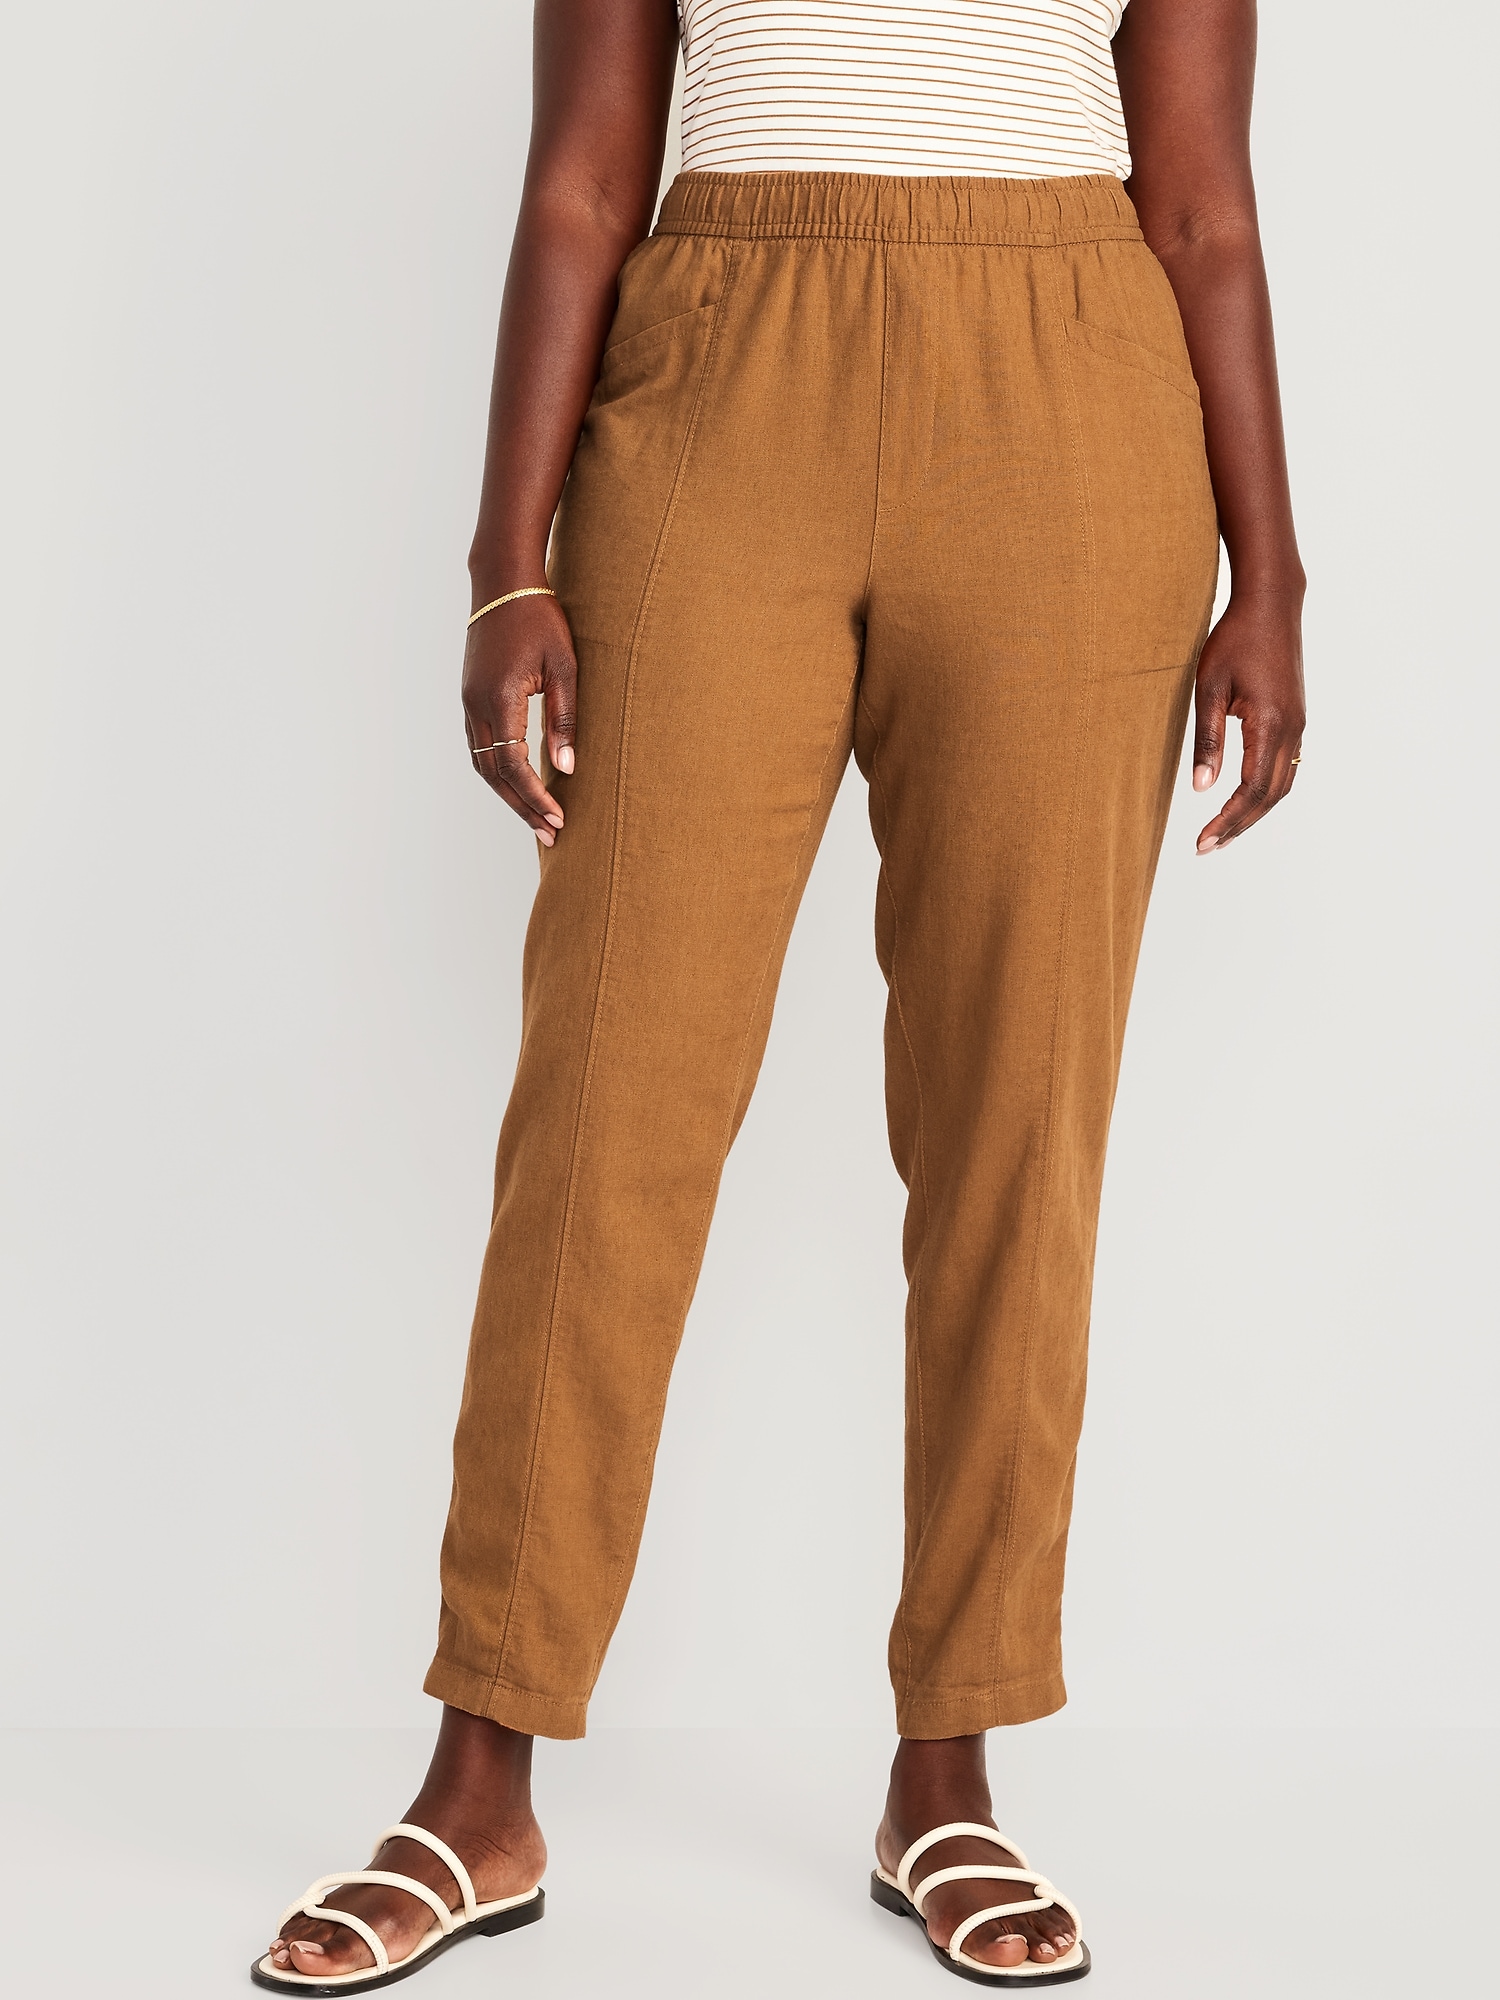 Cargo Jogger Pants For $35.97! - Kawaii Stop